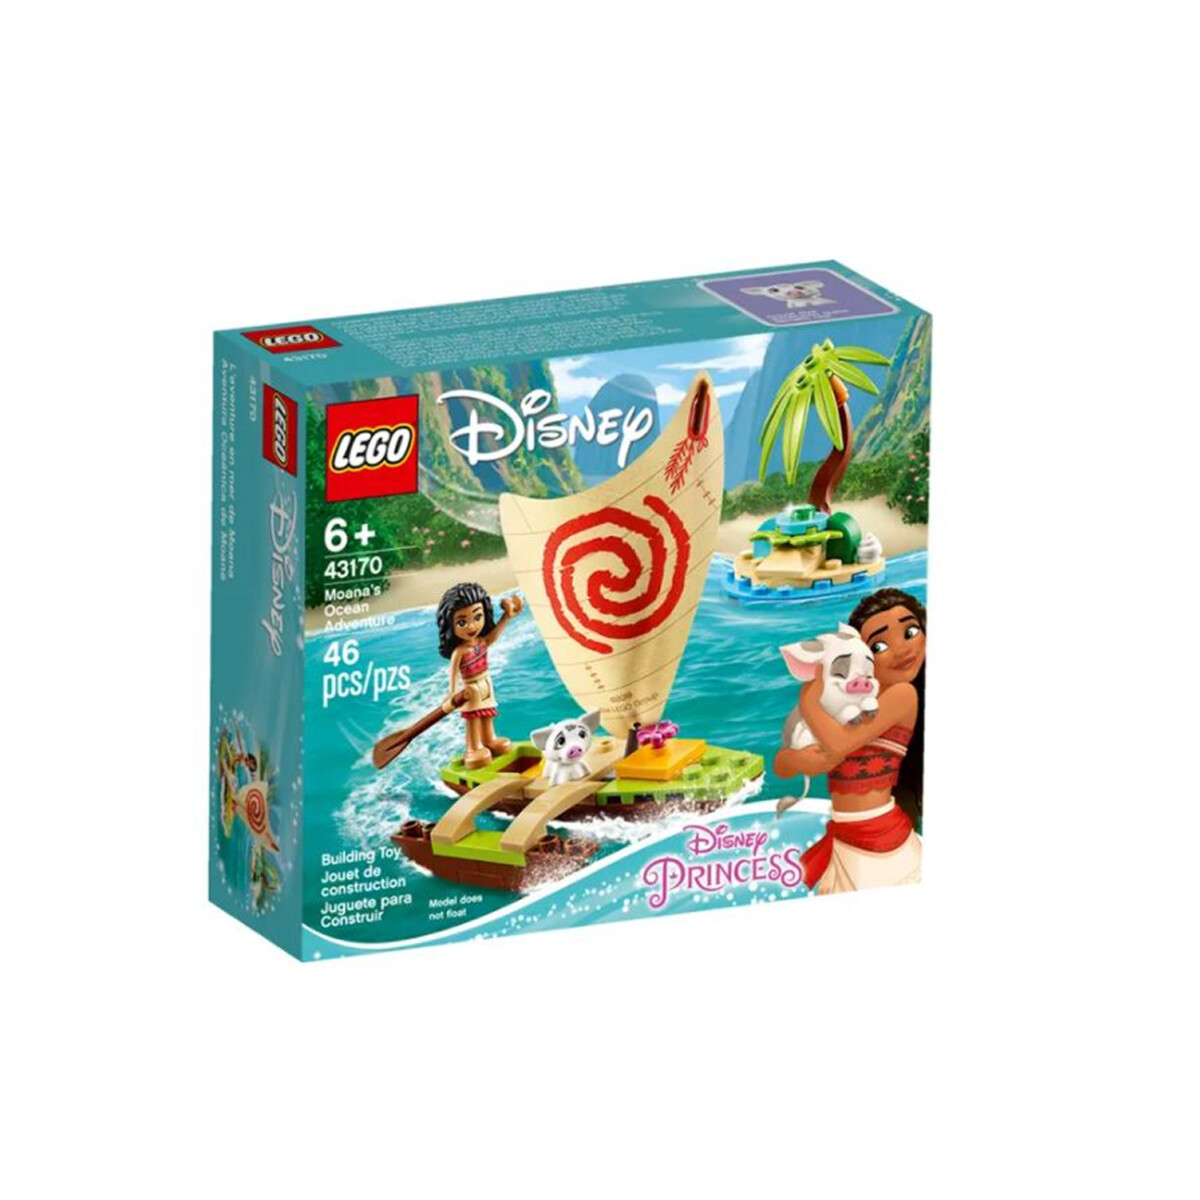 LEGO Moana Ocean Adventure 43170 